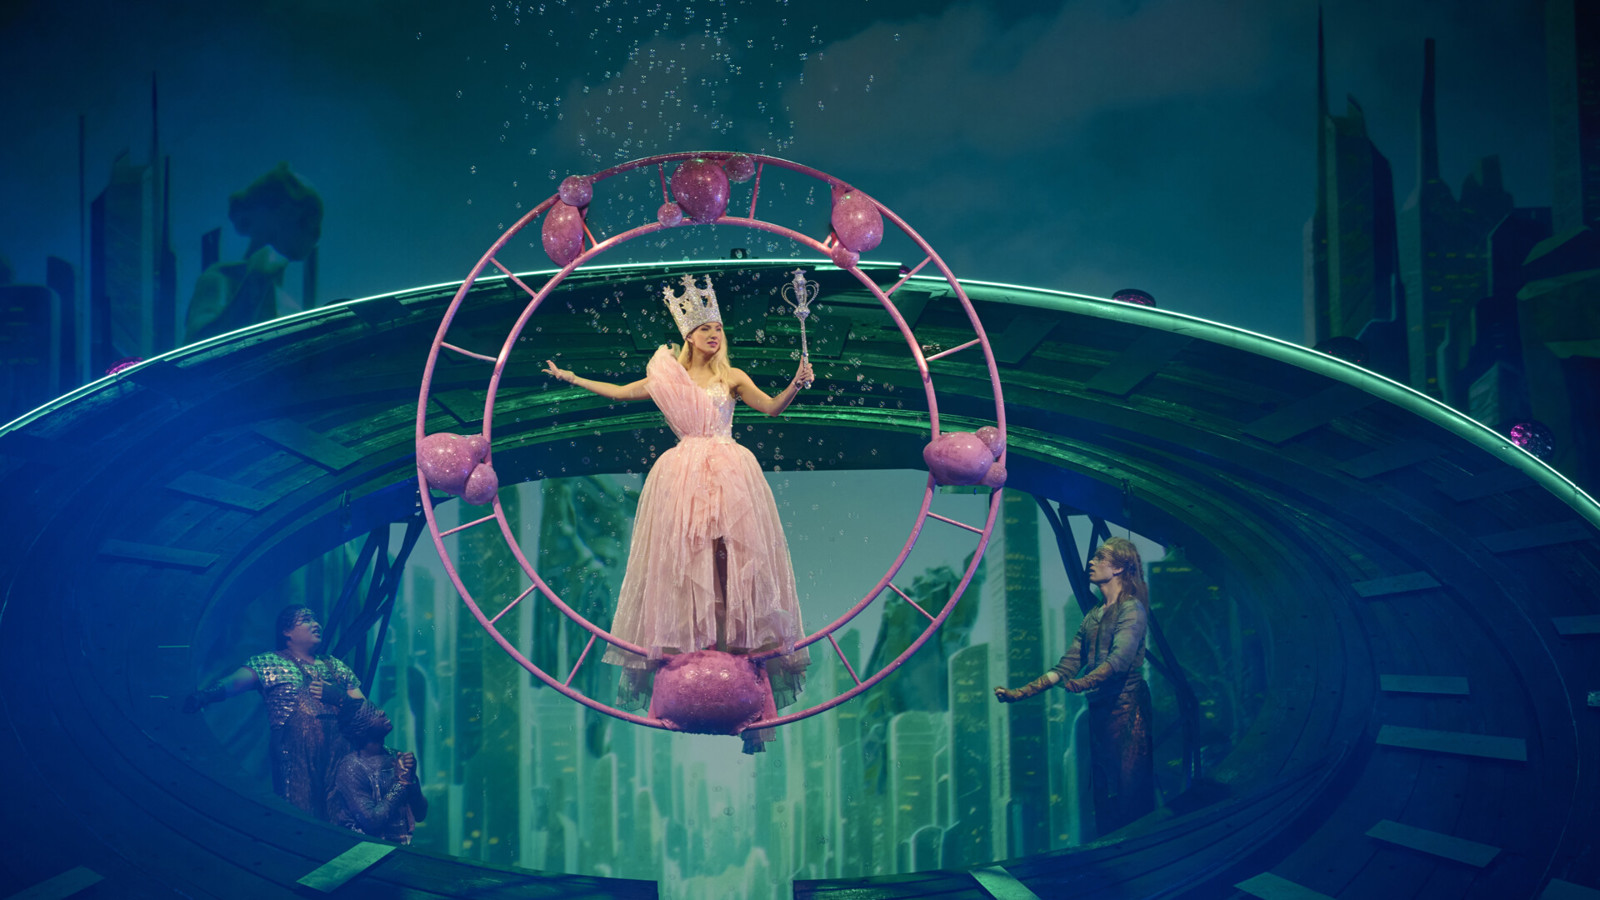 Prinsessa i rosa klänning balanserar på en flygande cirkel